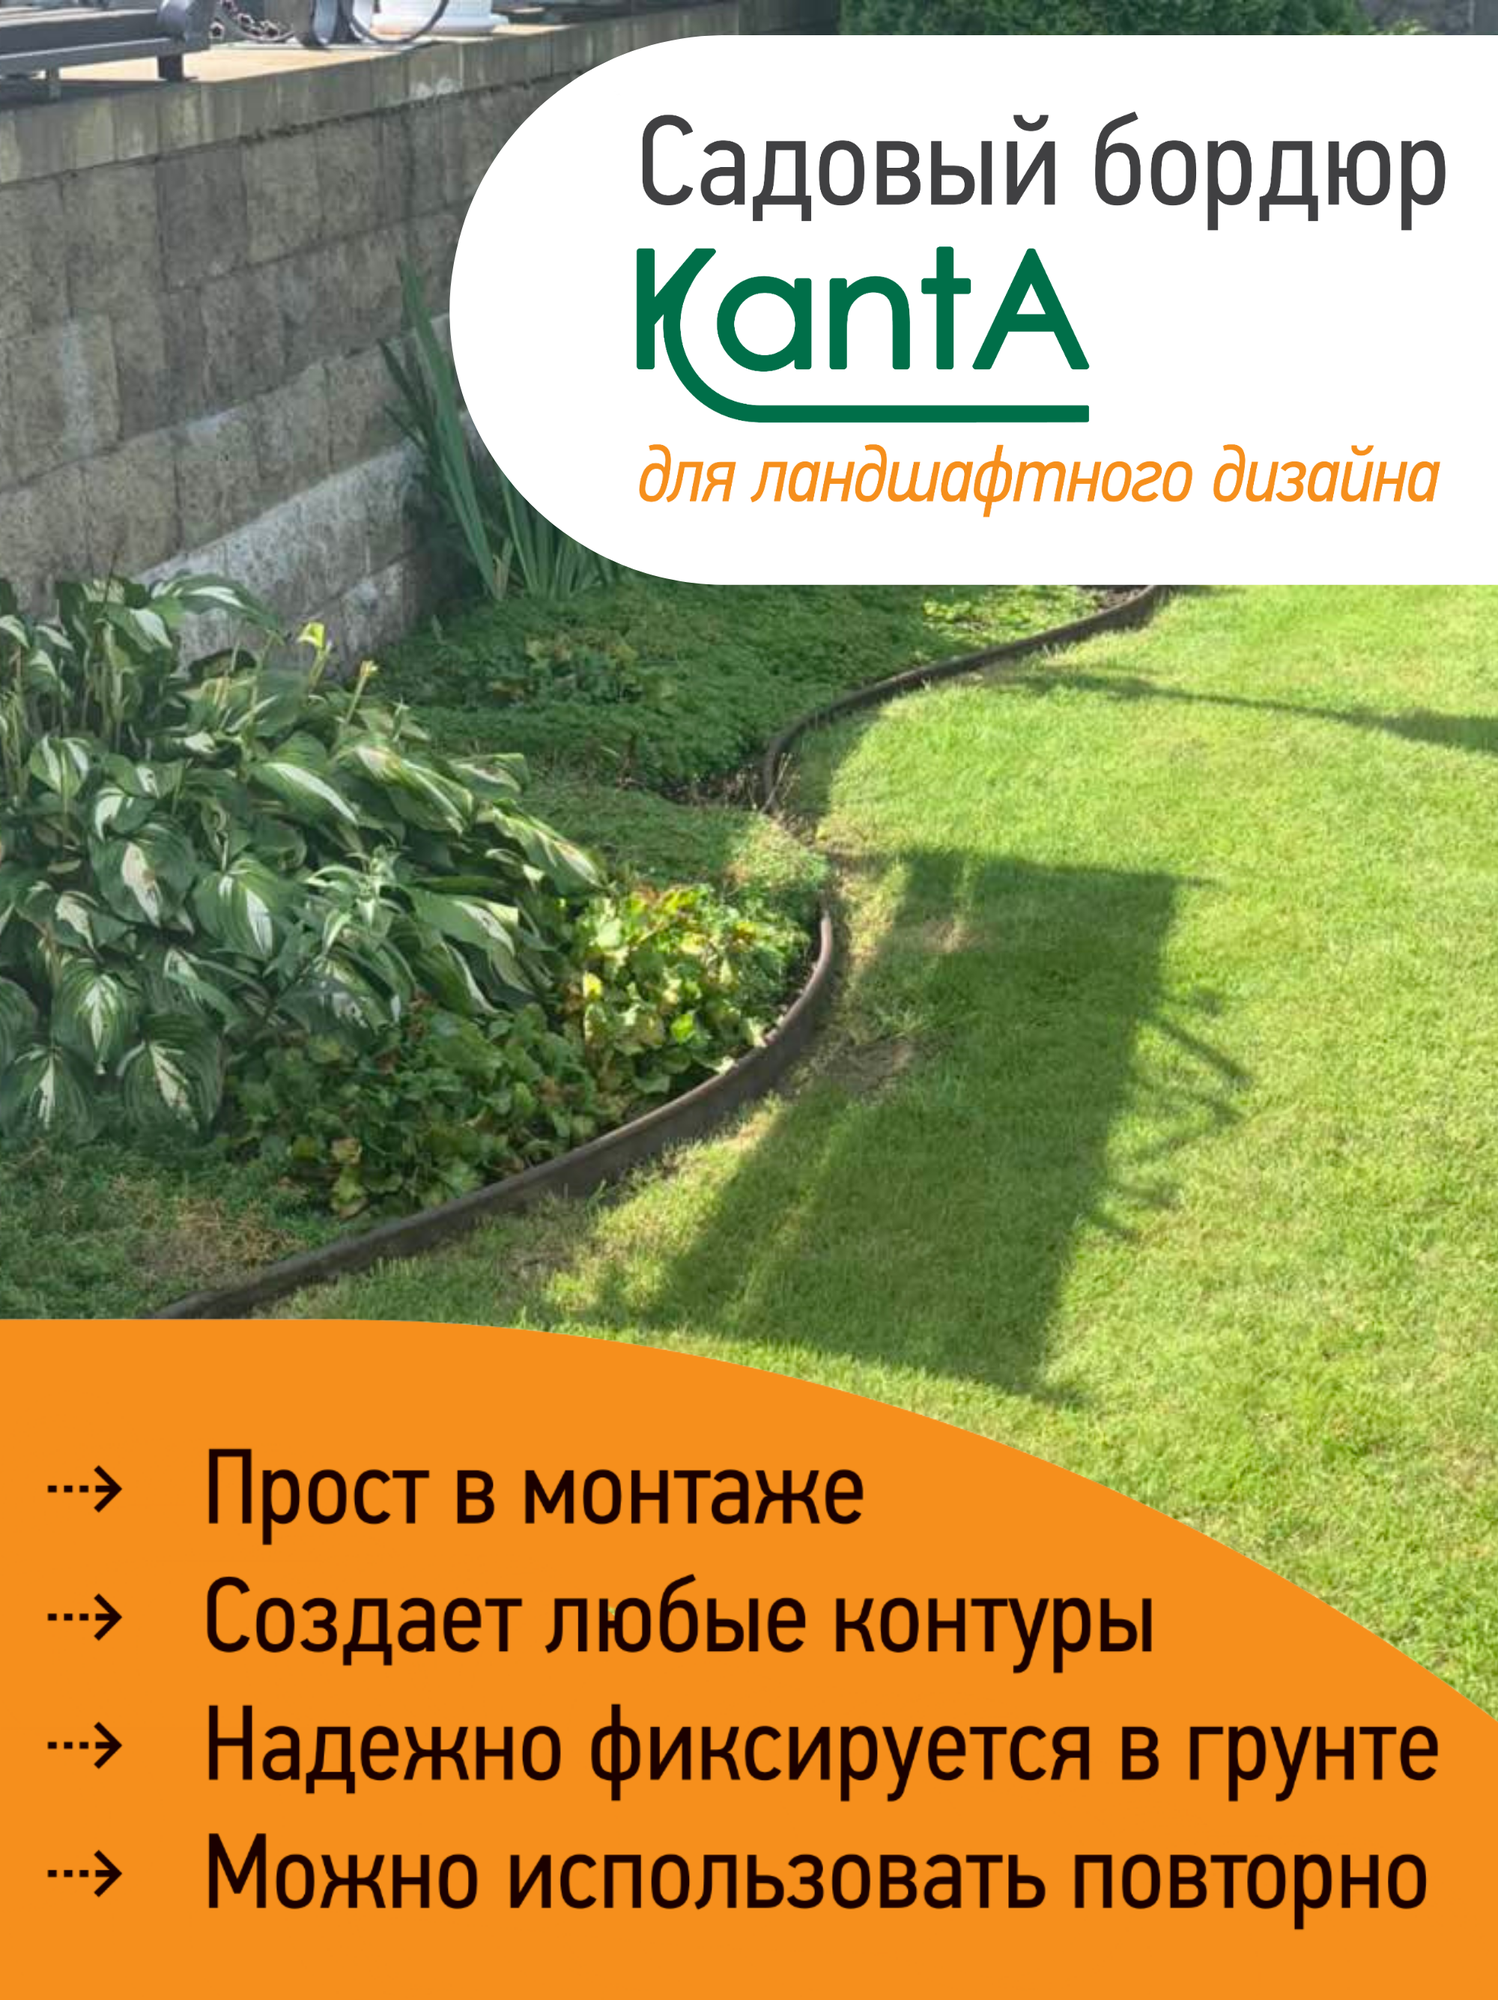 Бордюр садовый Стандартпарк Канта (Standartpark KANTA), коричневый, длина 10 м, высота 10 см, диаметр трубки 1,6 см